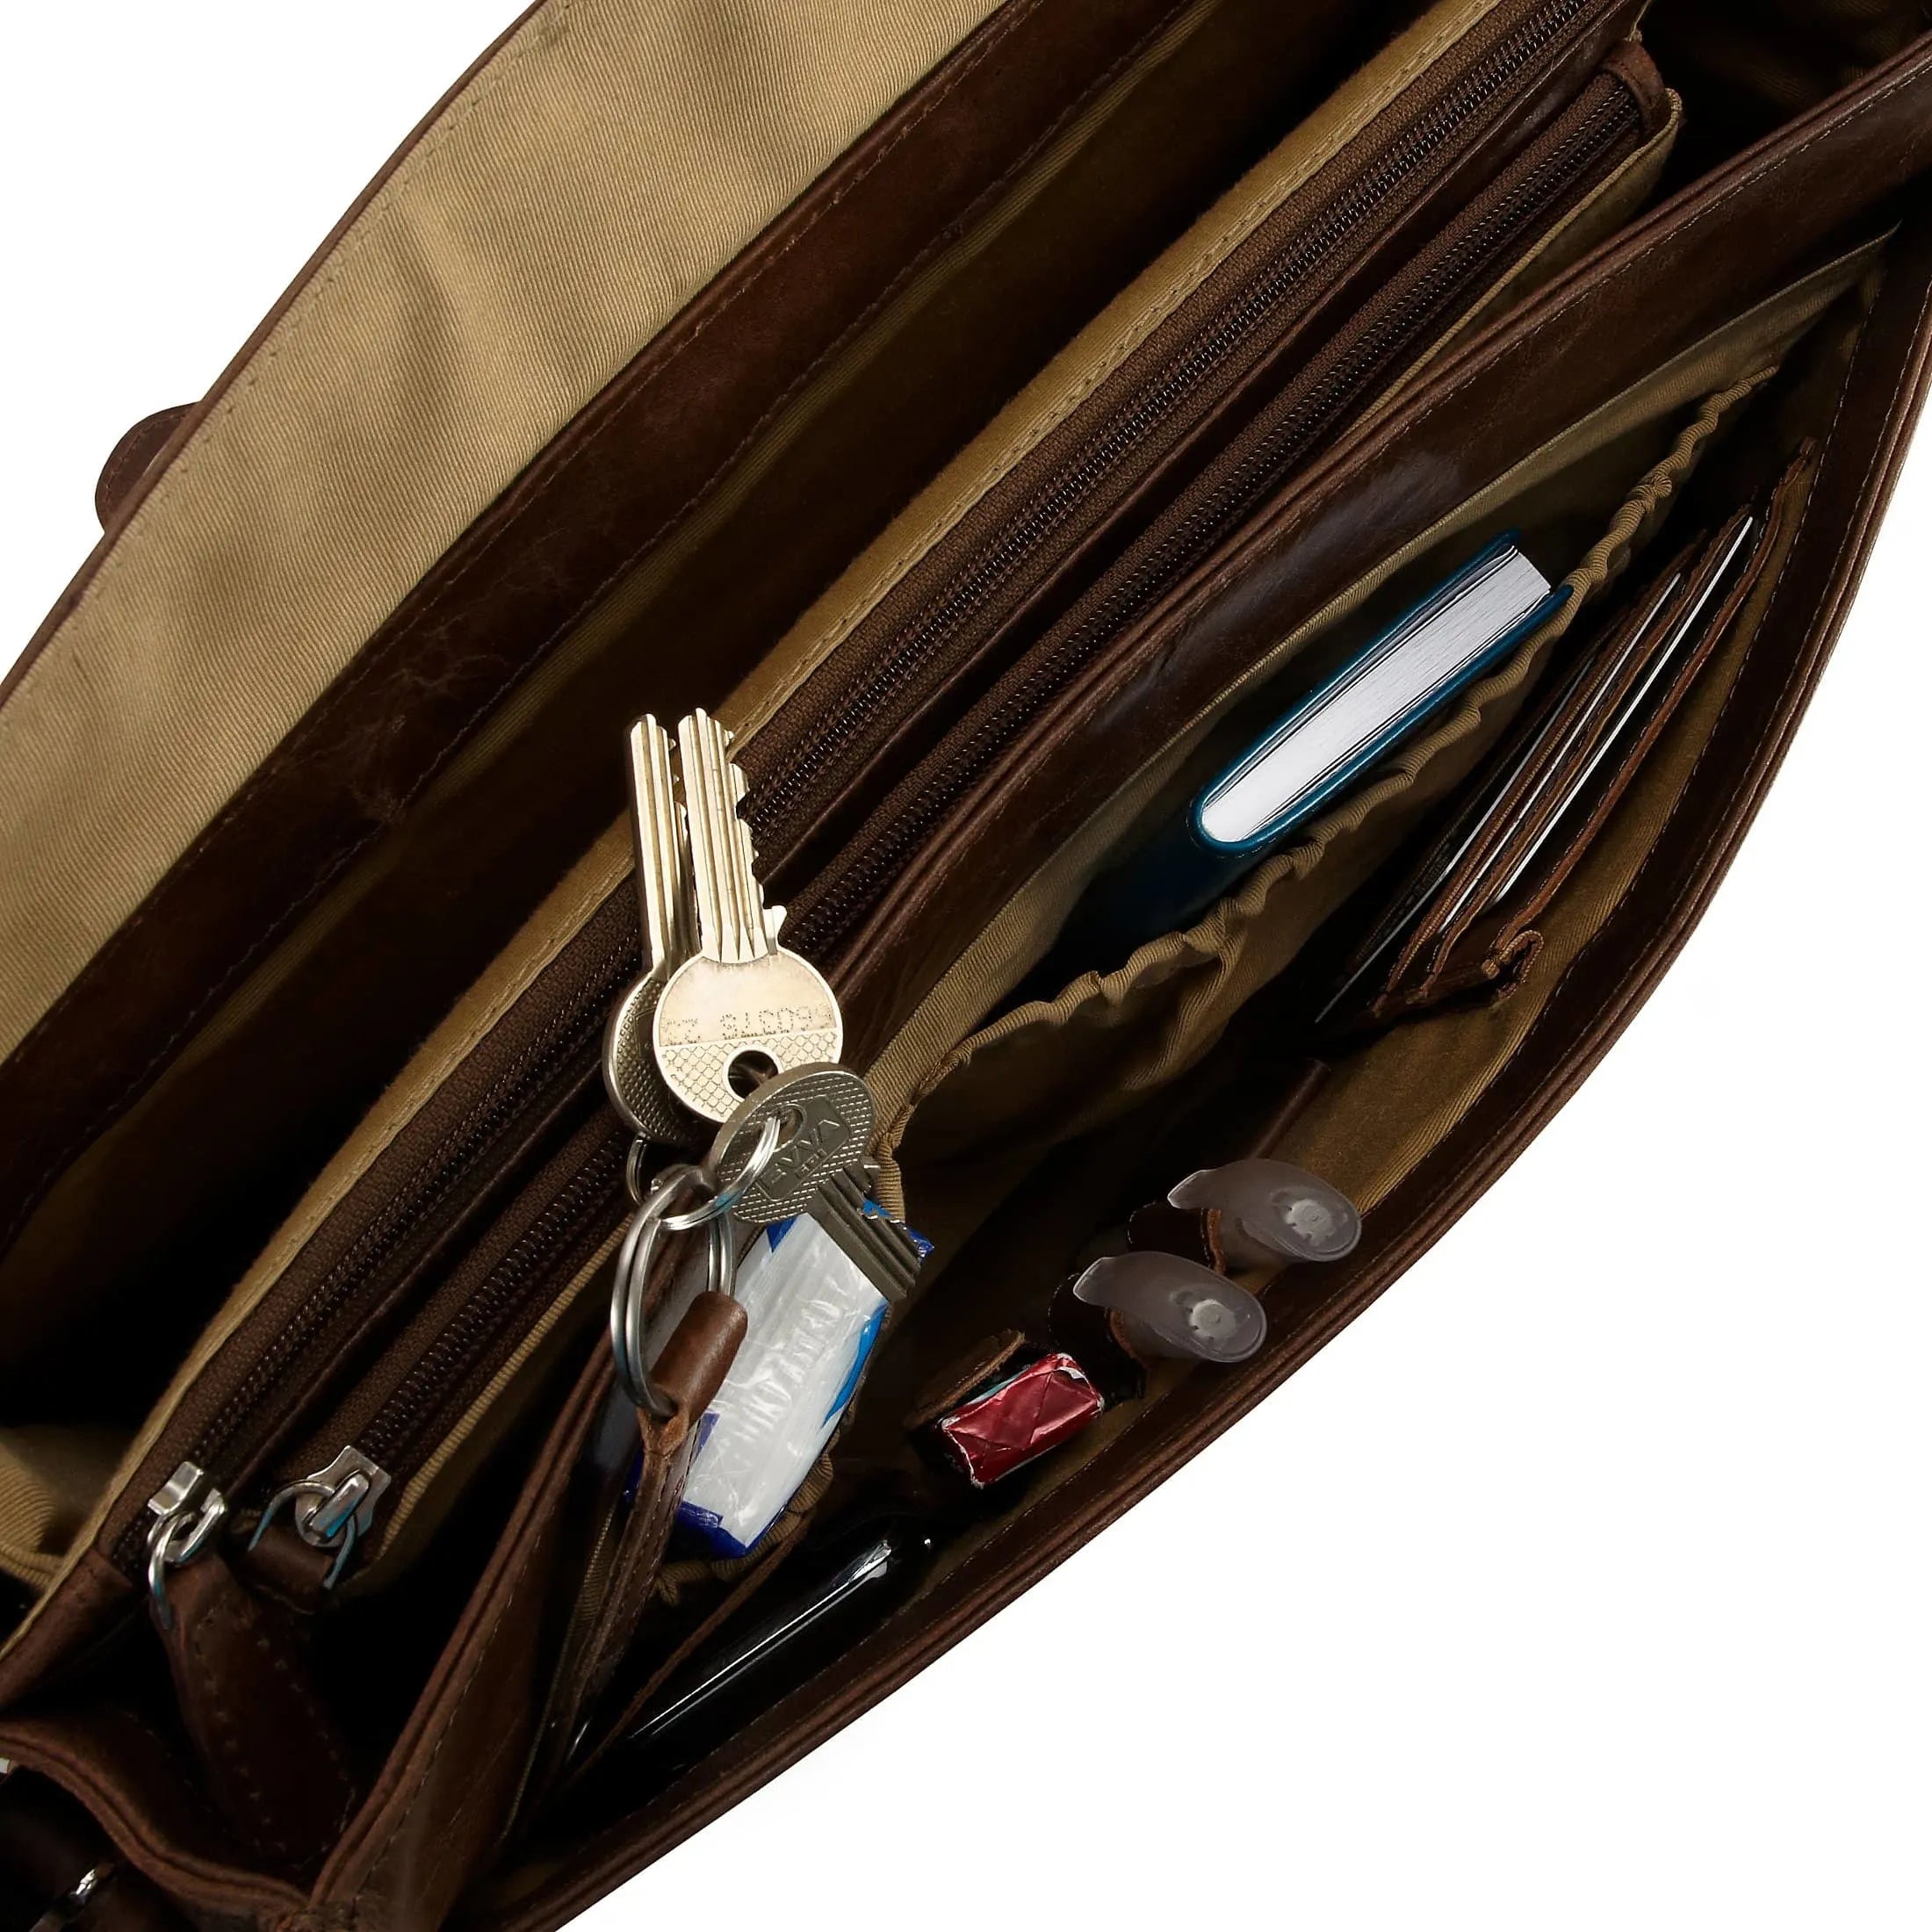 Plevier 700 series business briefcase with laptop compartment 39 cm - cognac